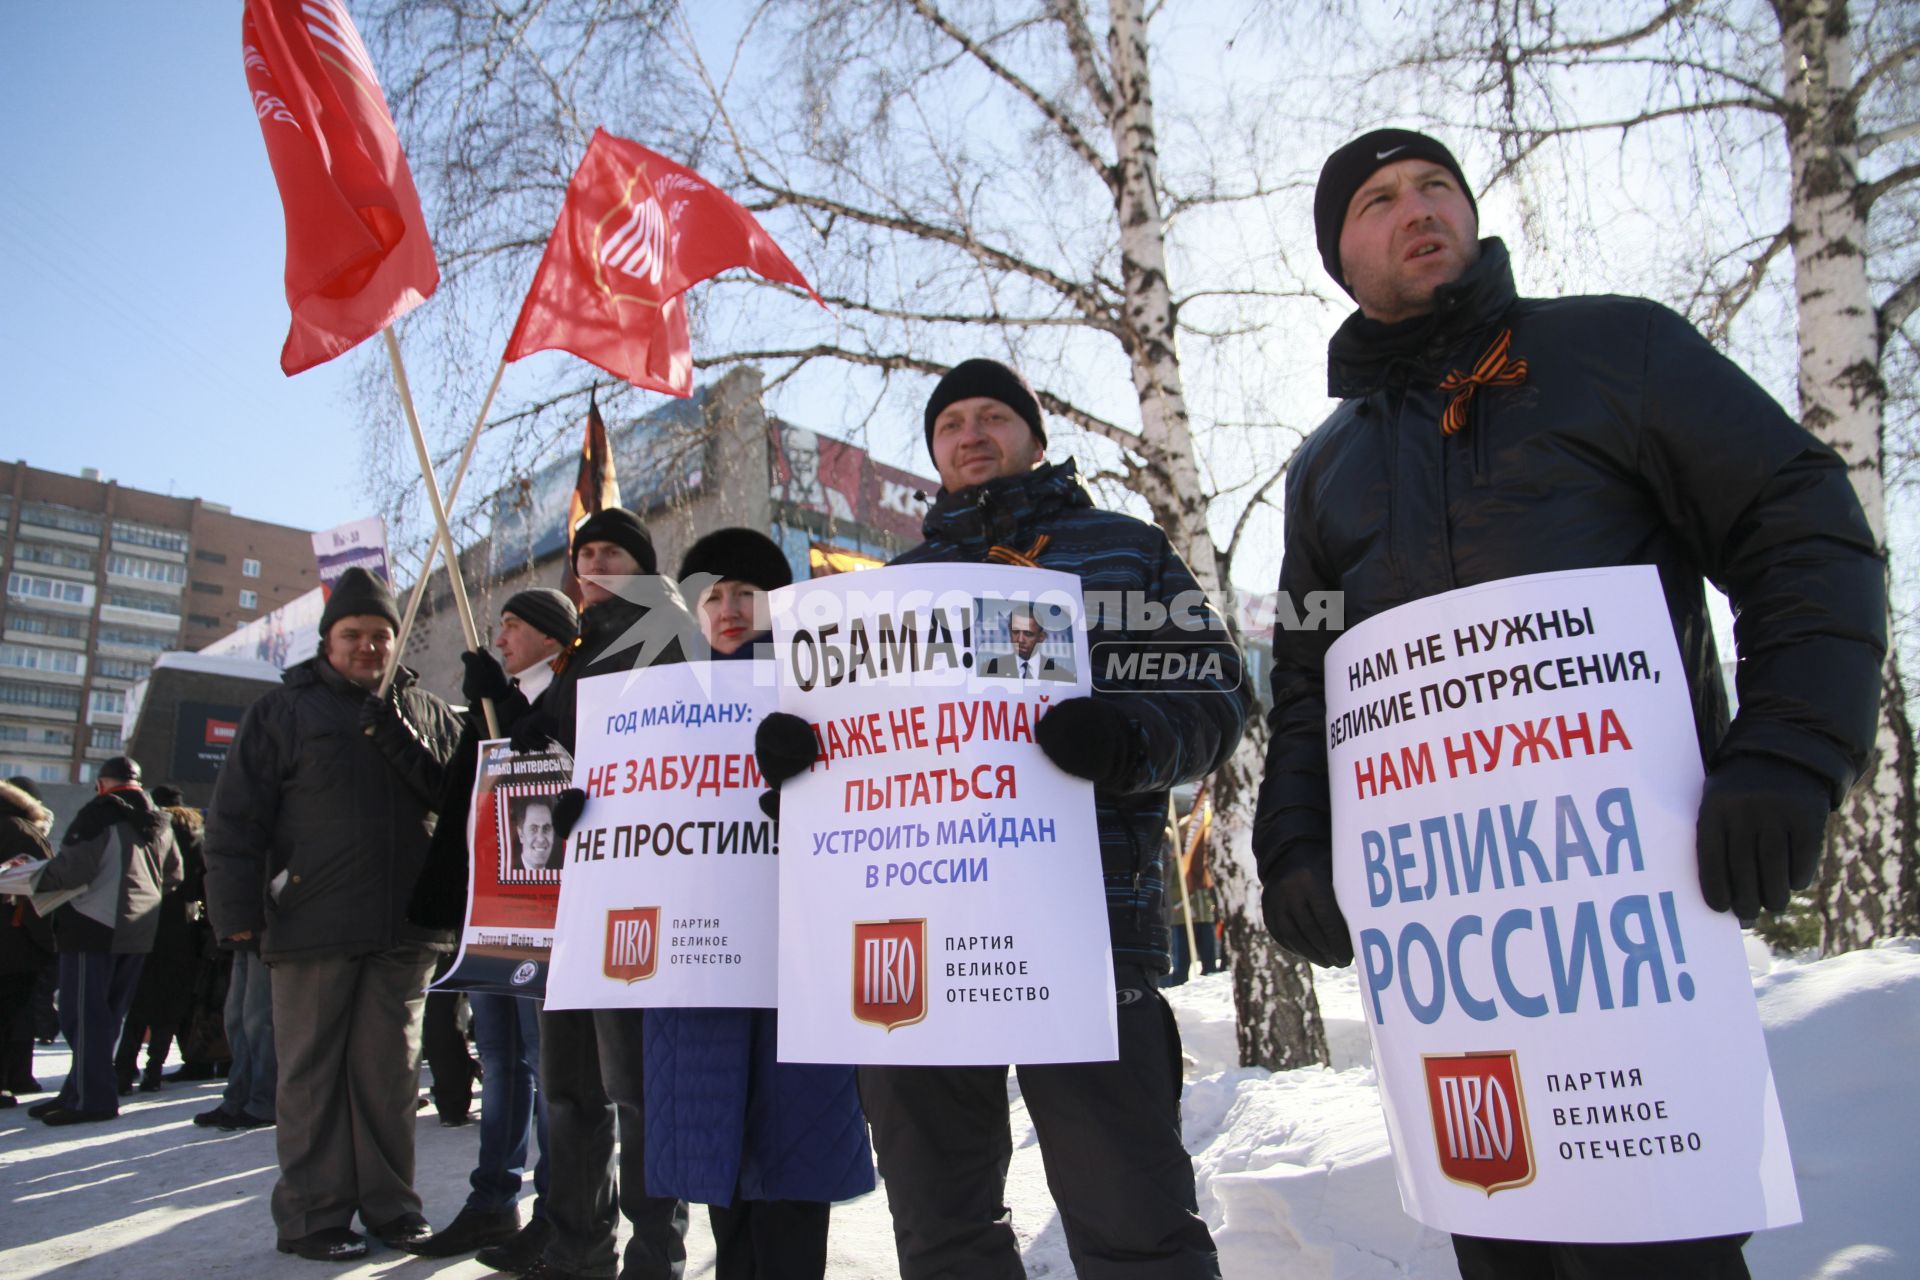 Барнаул. Участник движения `Антимайдан` во время проведения митинга.